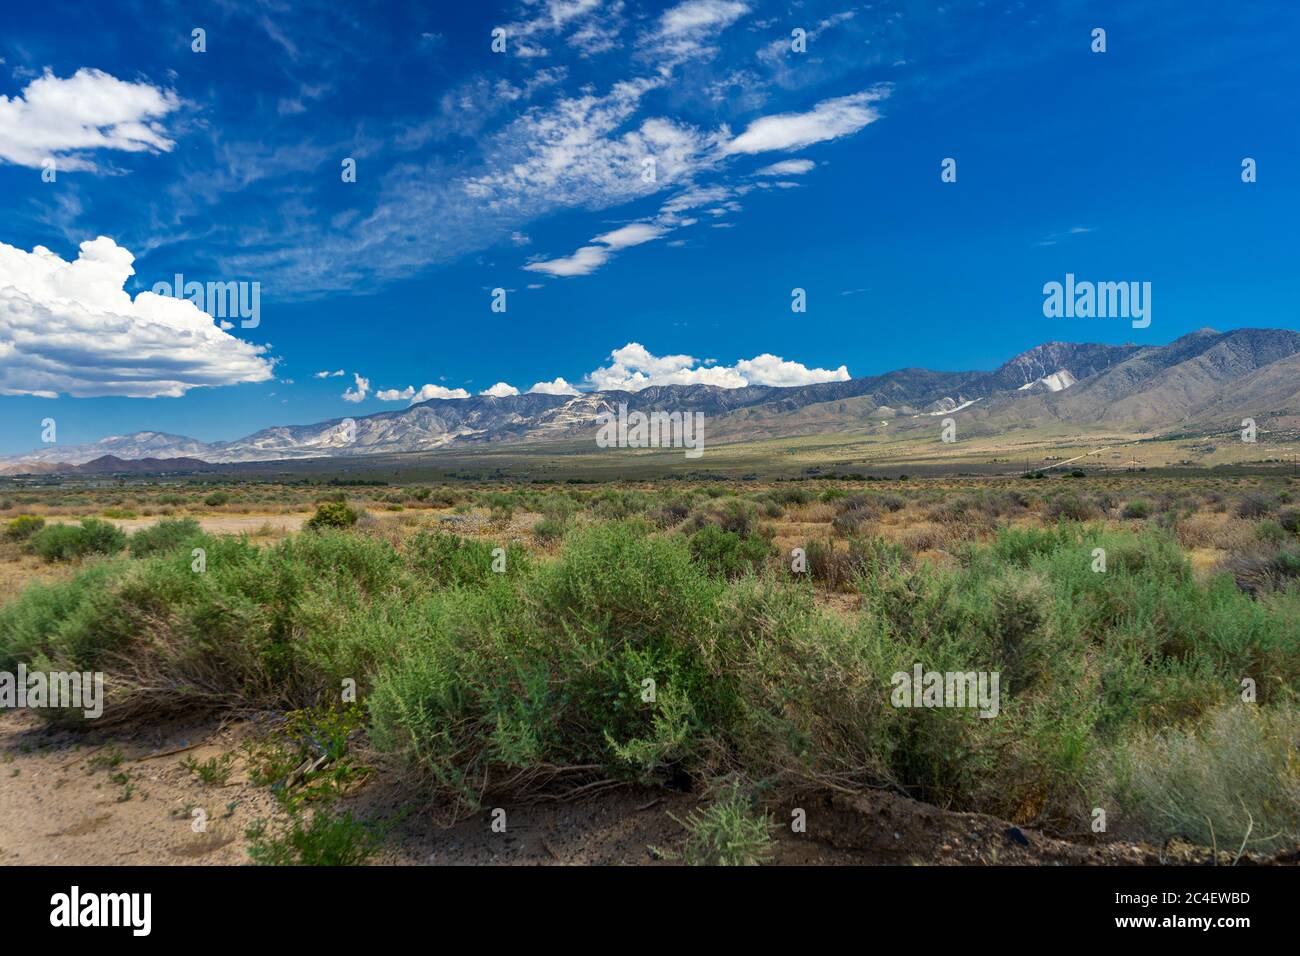 Ampia vista della catena montuosa di San Bernardino dalla Valle di Lucerna nel deserto del Mojave in California. Foto Stock